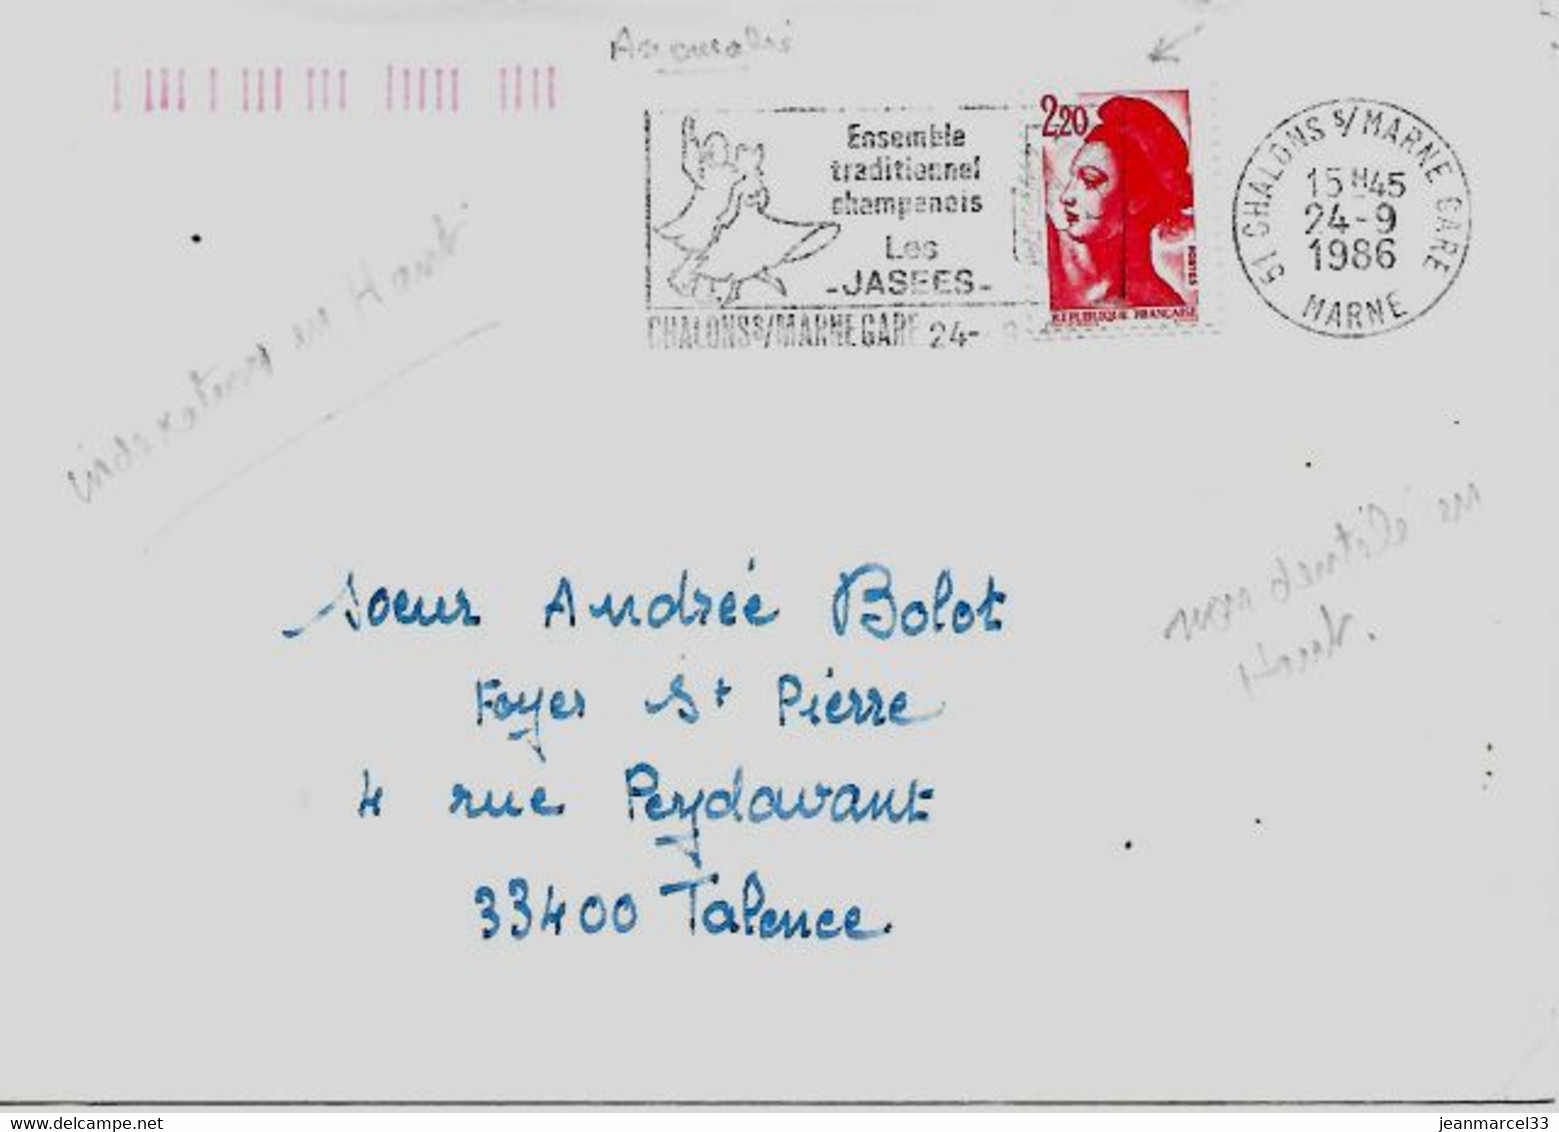 Curiosité 51 Chalons S/Marne Gare 24-9 1986, Timbre Non Dentelé En Haut, Indexation Orange En Haut à Gauche - Covers & Documents